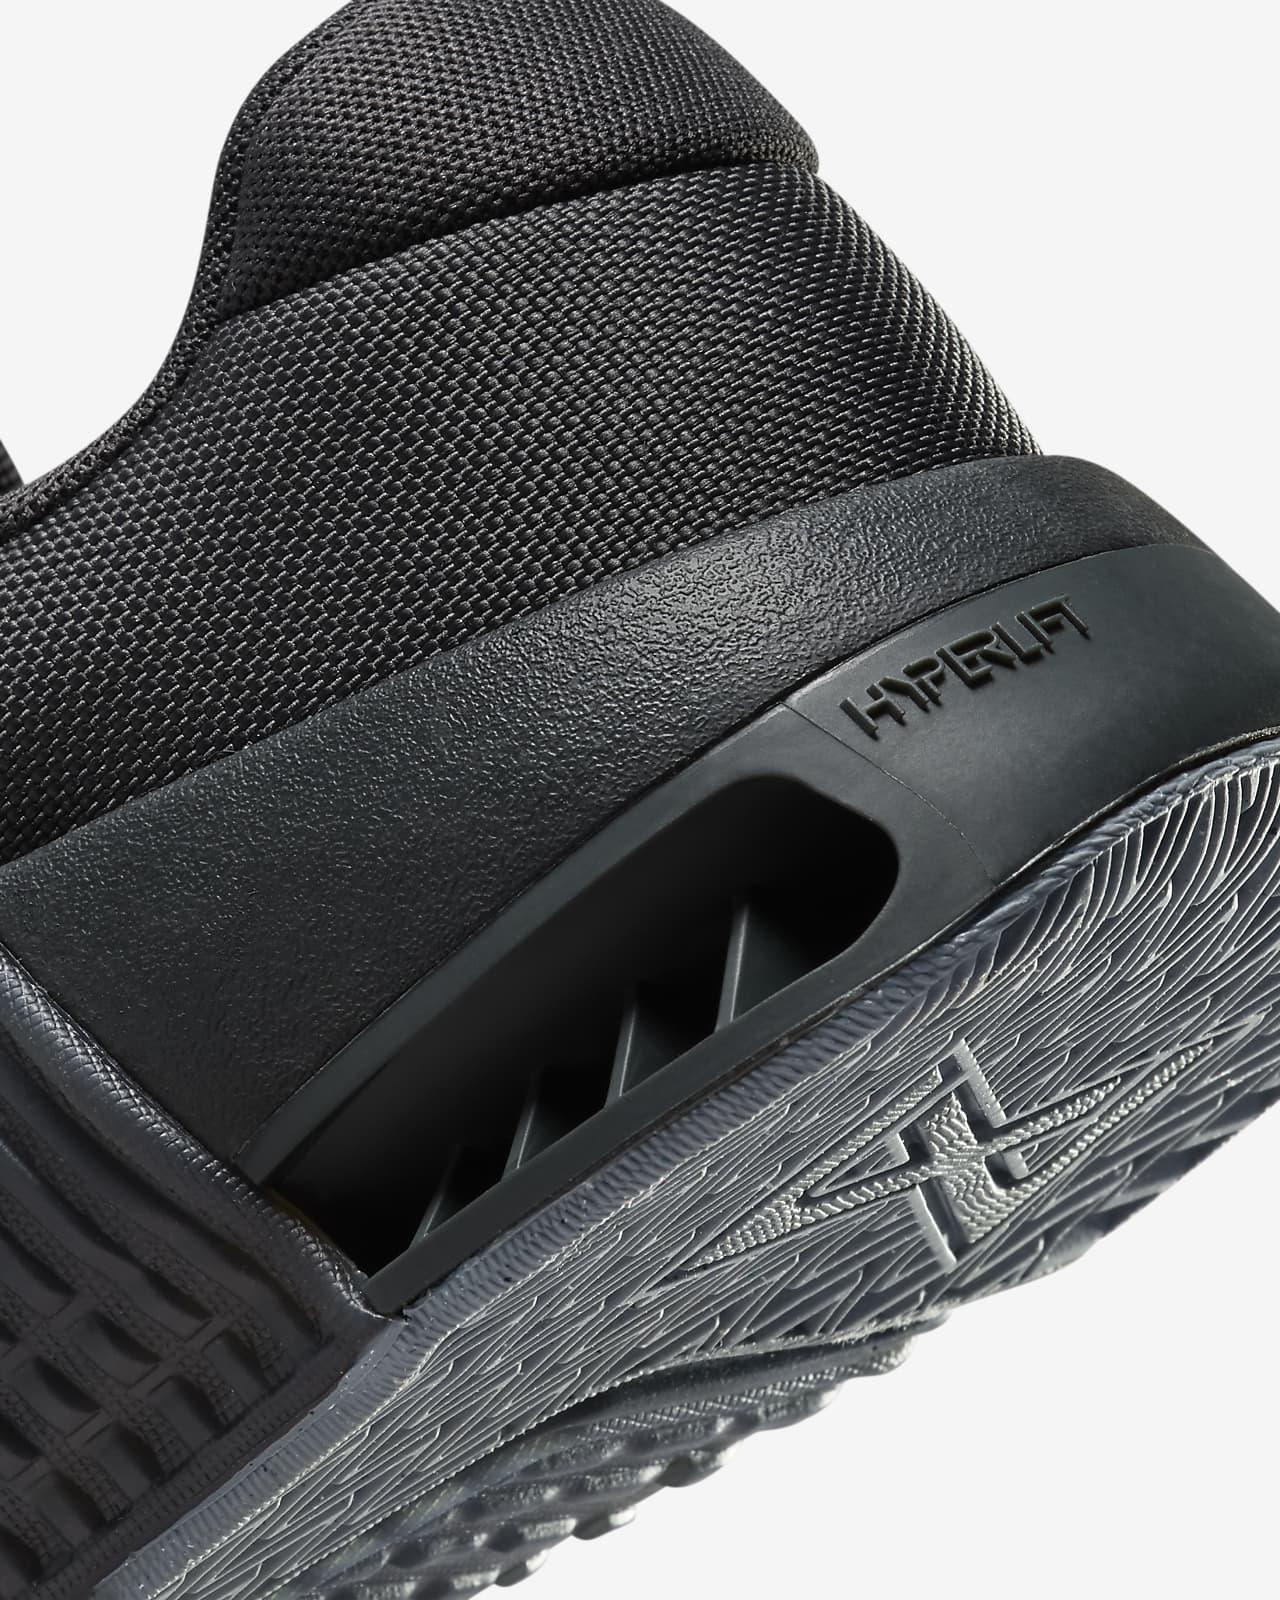 Precios de Nike Metcon 9 AMP hombre - Ofertas para comprar online